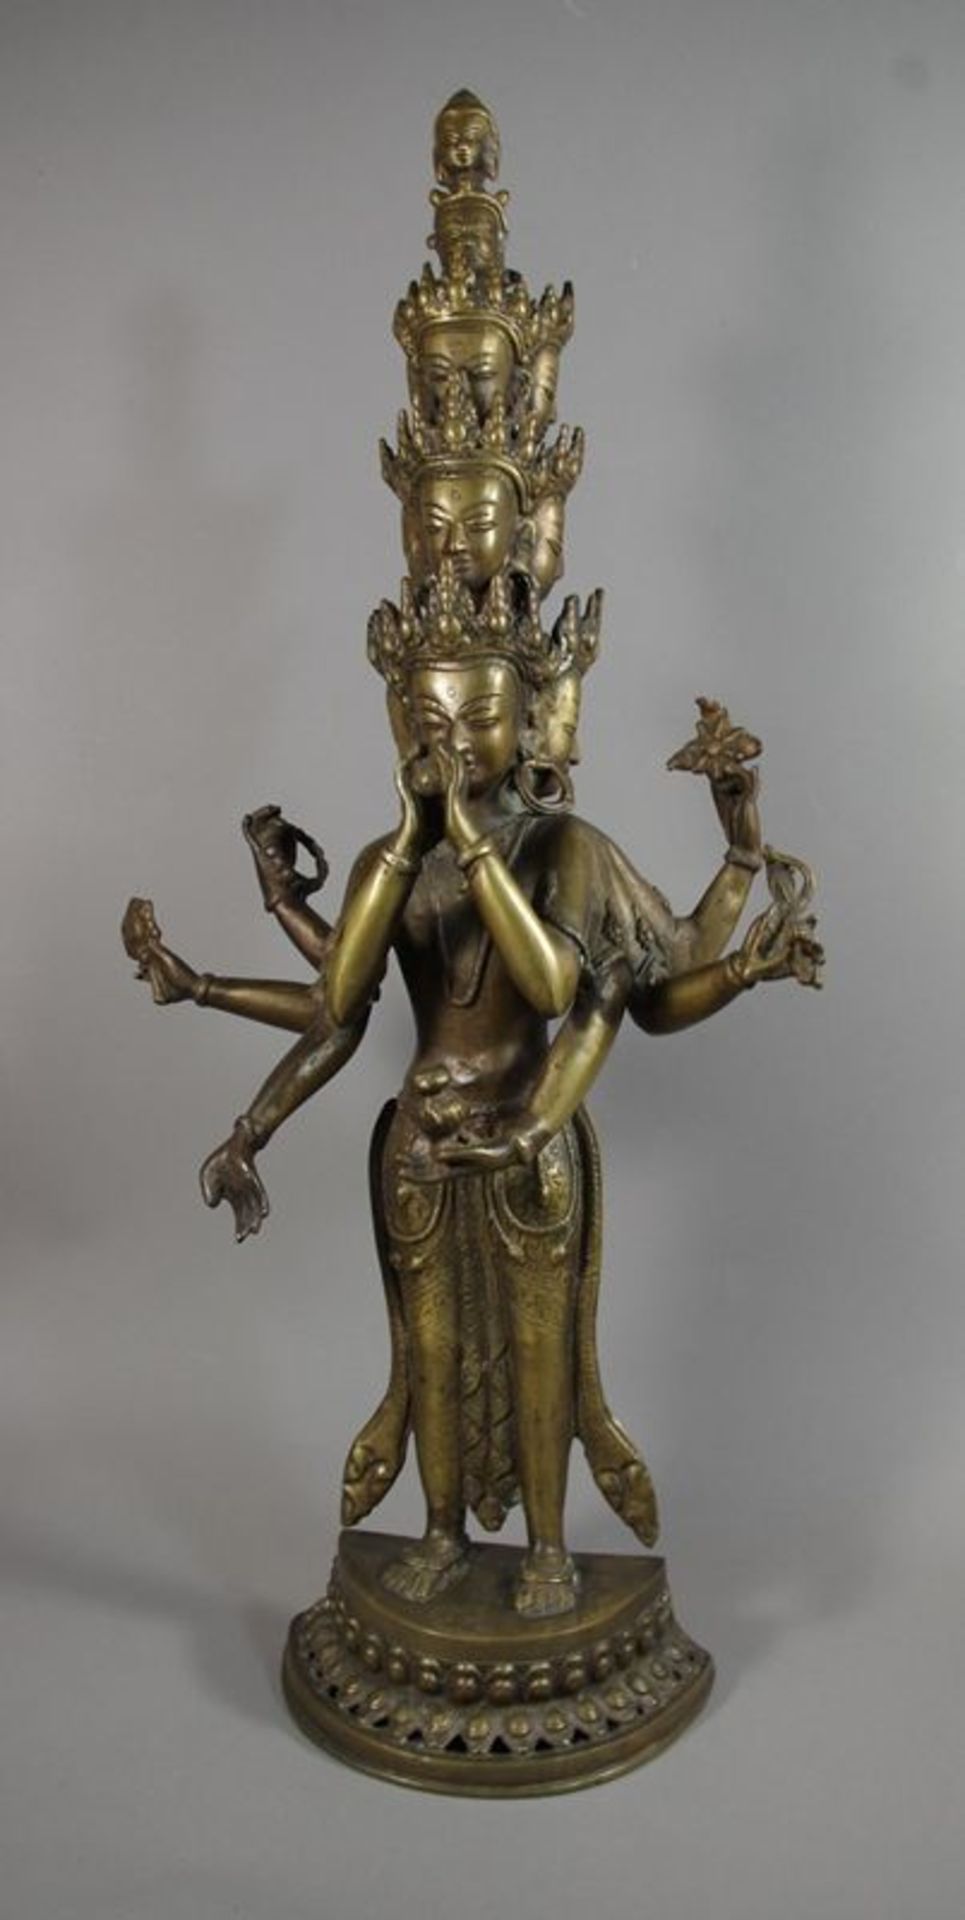 Avalokiteshvara in neunköpfiger u. achtarmiger Erscheinungsform auf Lotossockel stehend, die Köpfe